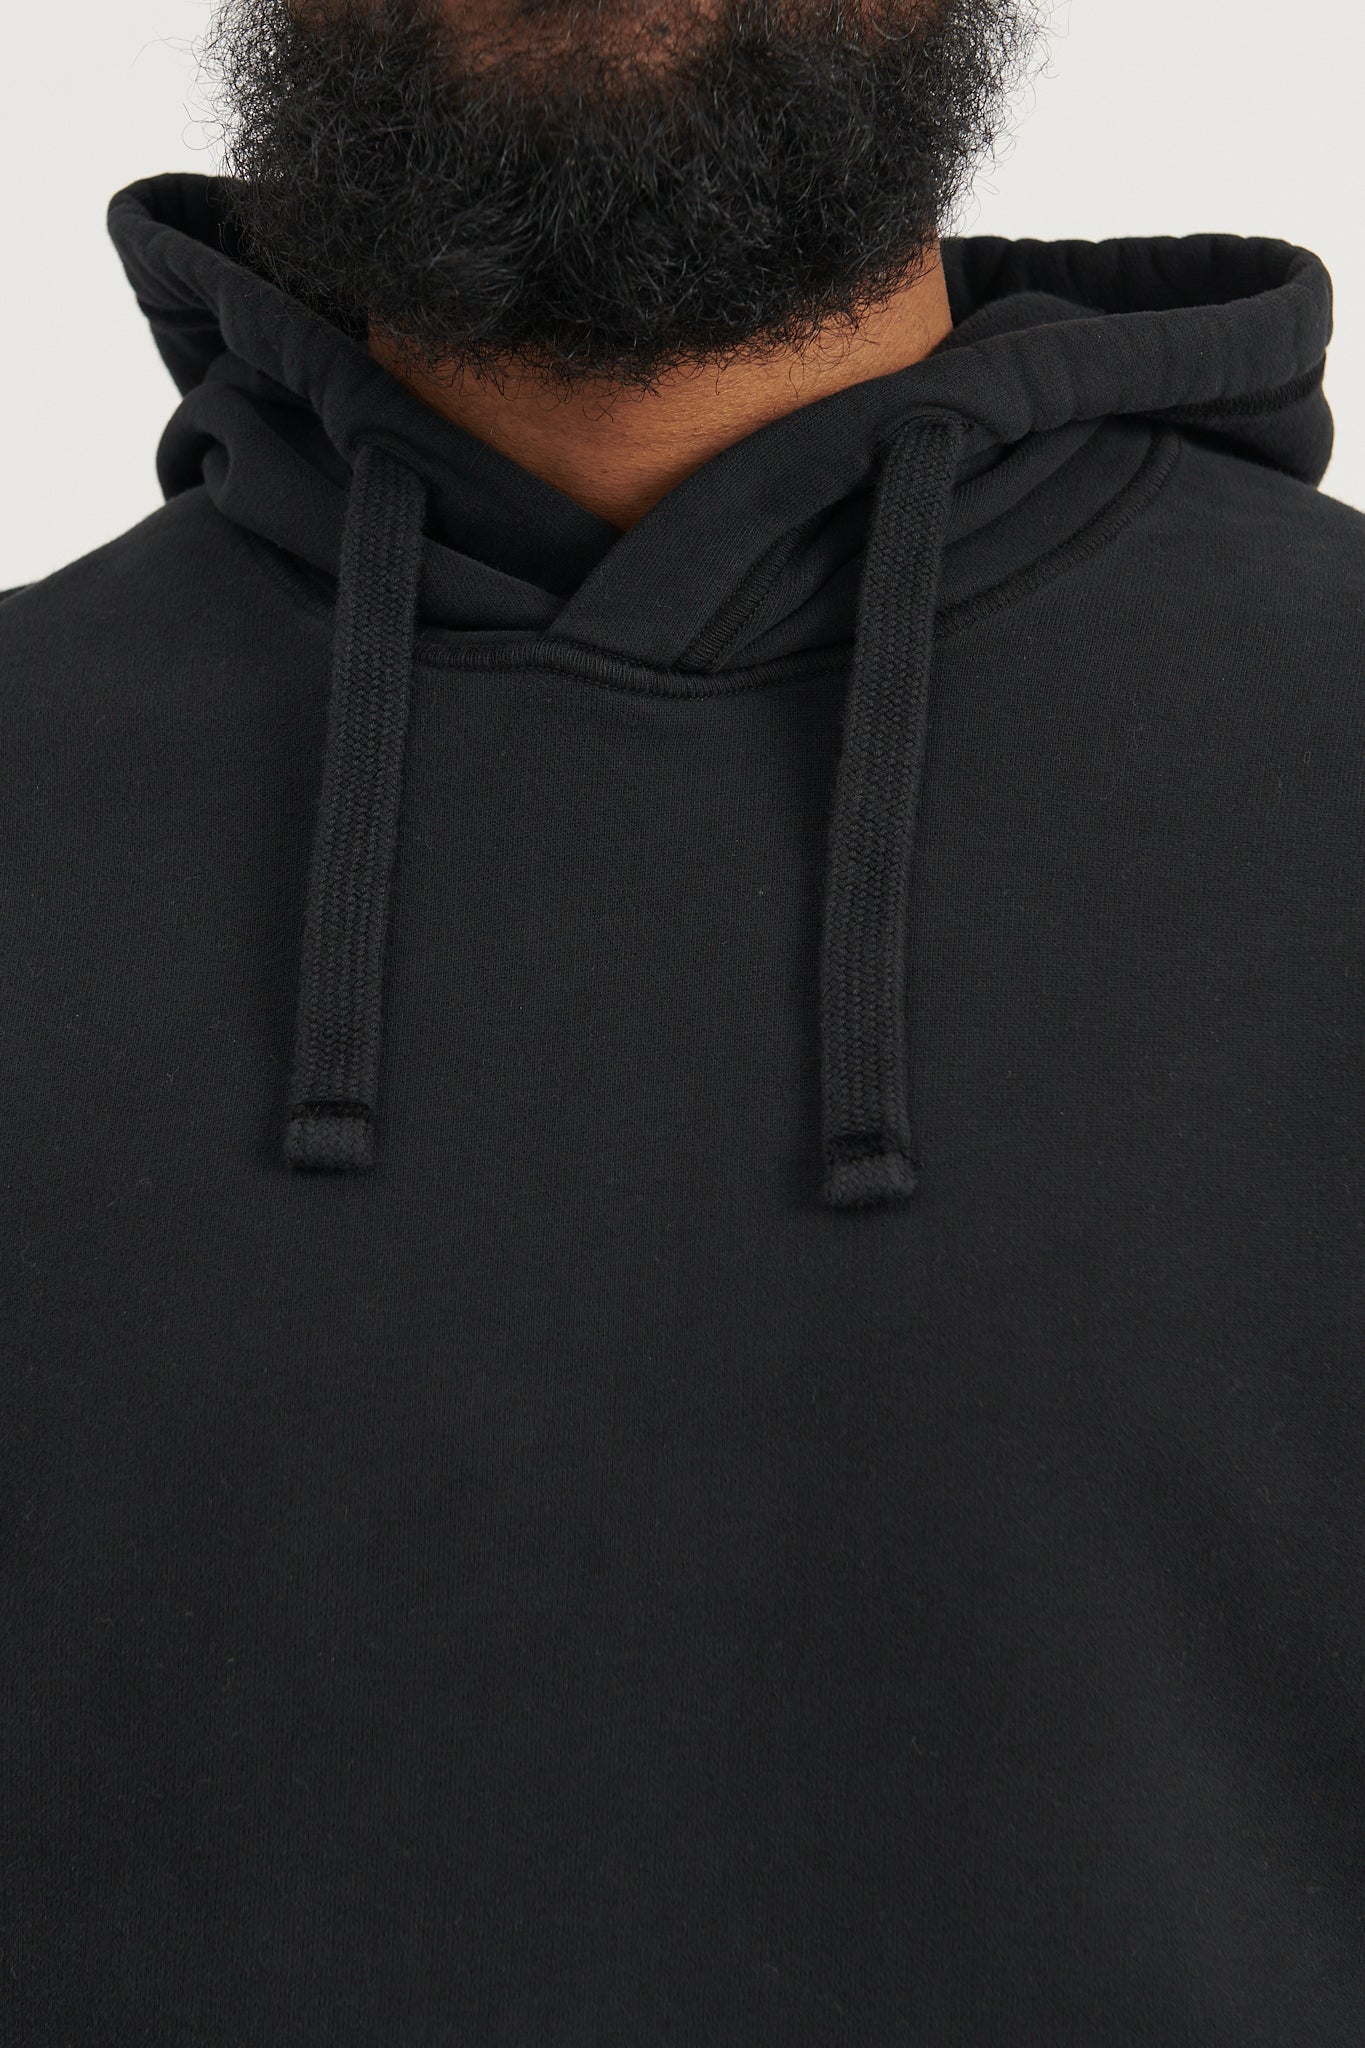 64120 Brushed Cotton Fleece Hooded Sweatshirt  - Black